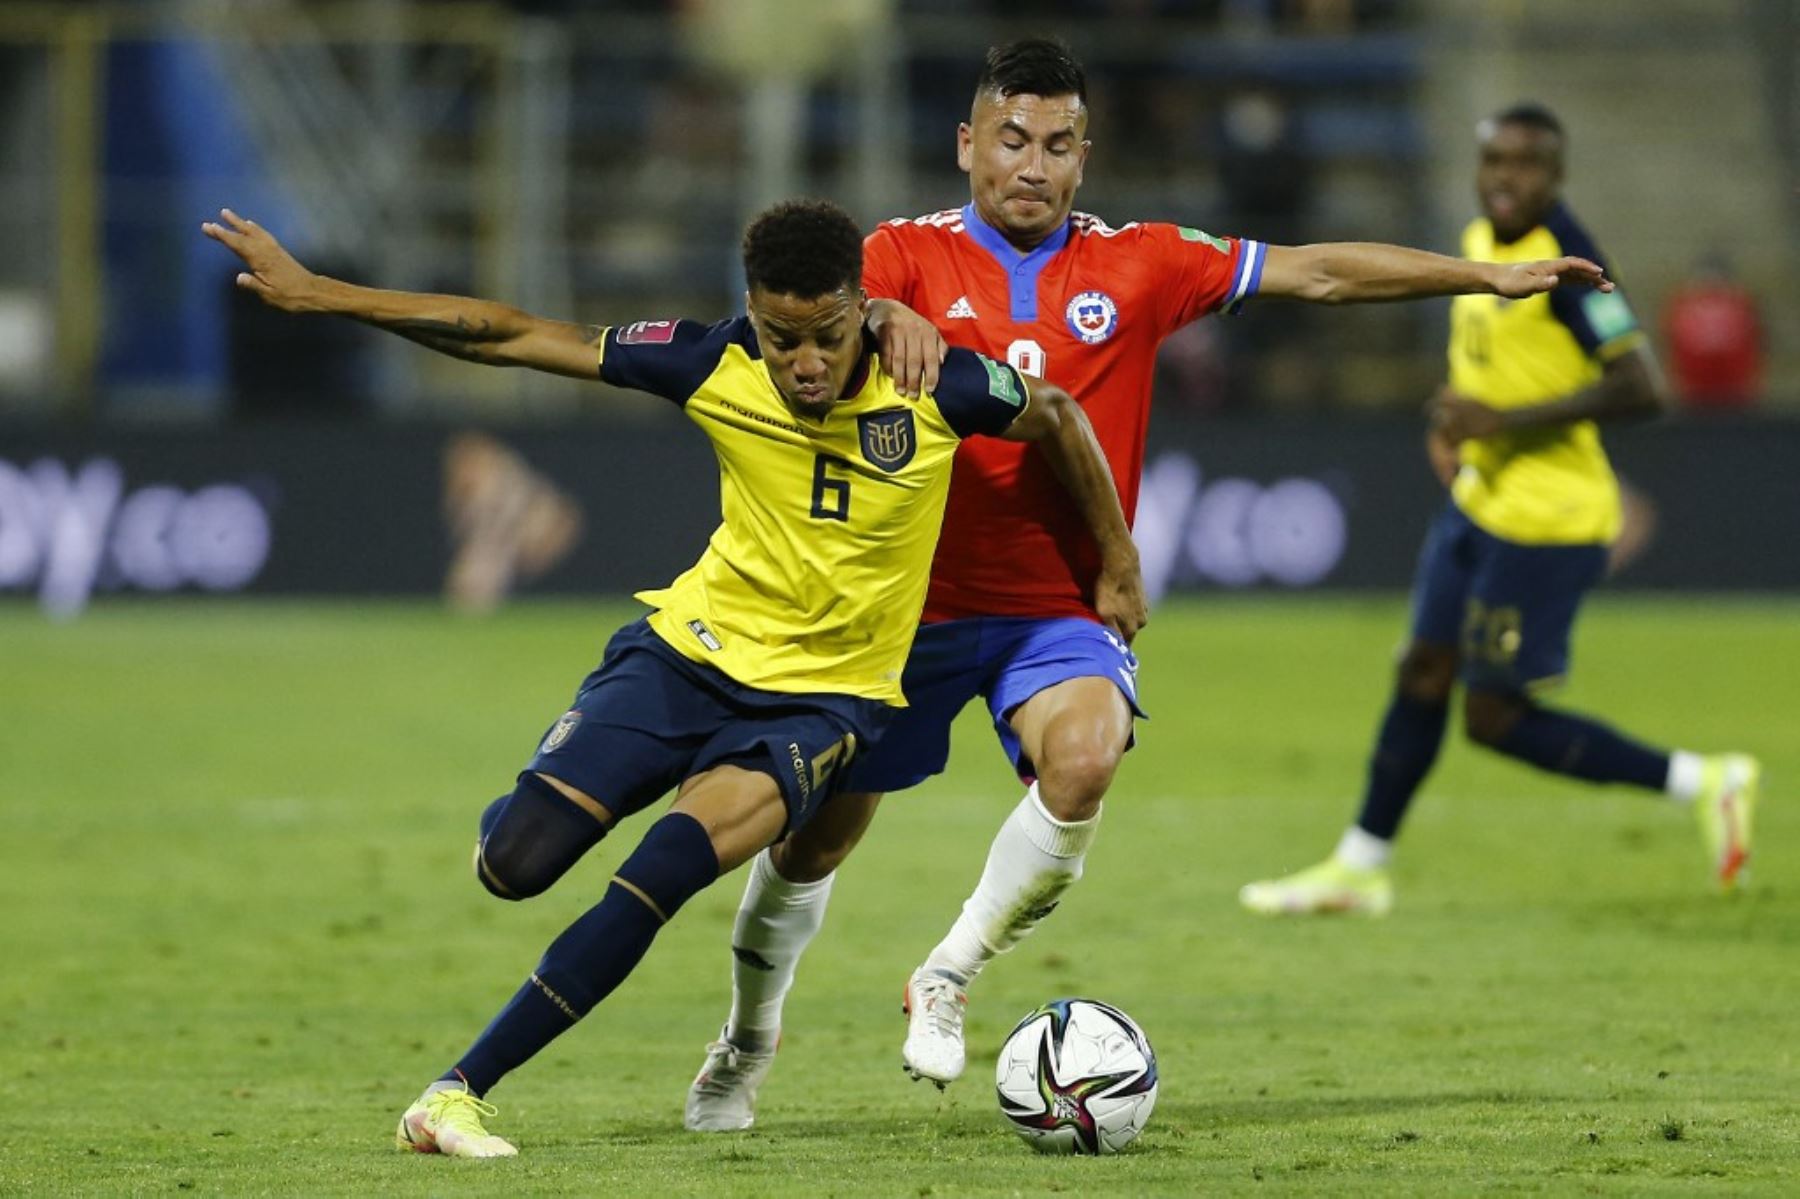 Chilenos quieren hacerse del cupo al Mundial Catar 2022 a través de una denuncia del futbolista Byron Castillo, quien asegura es colombiano y jugó por Ecuador